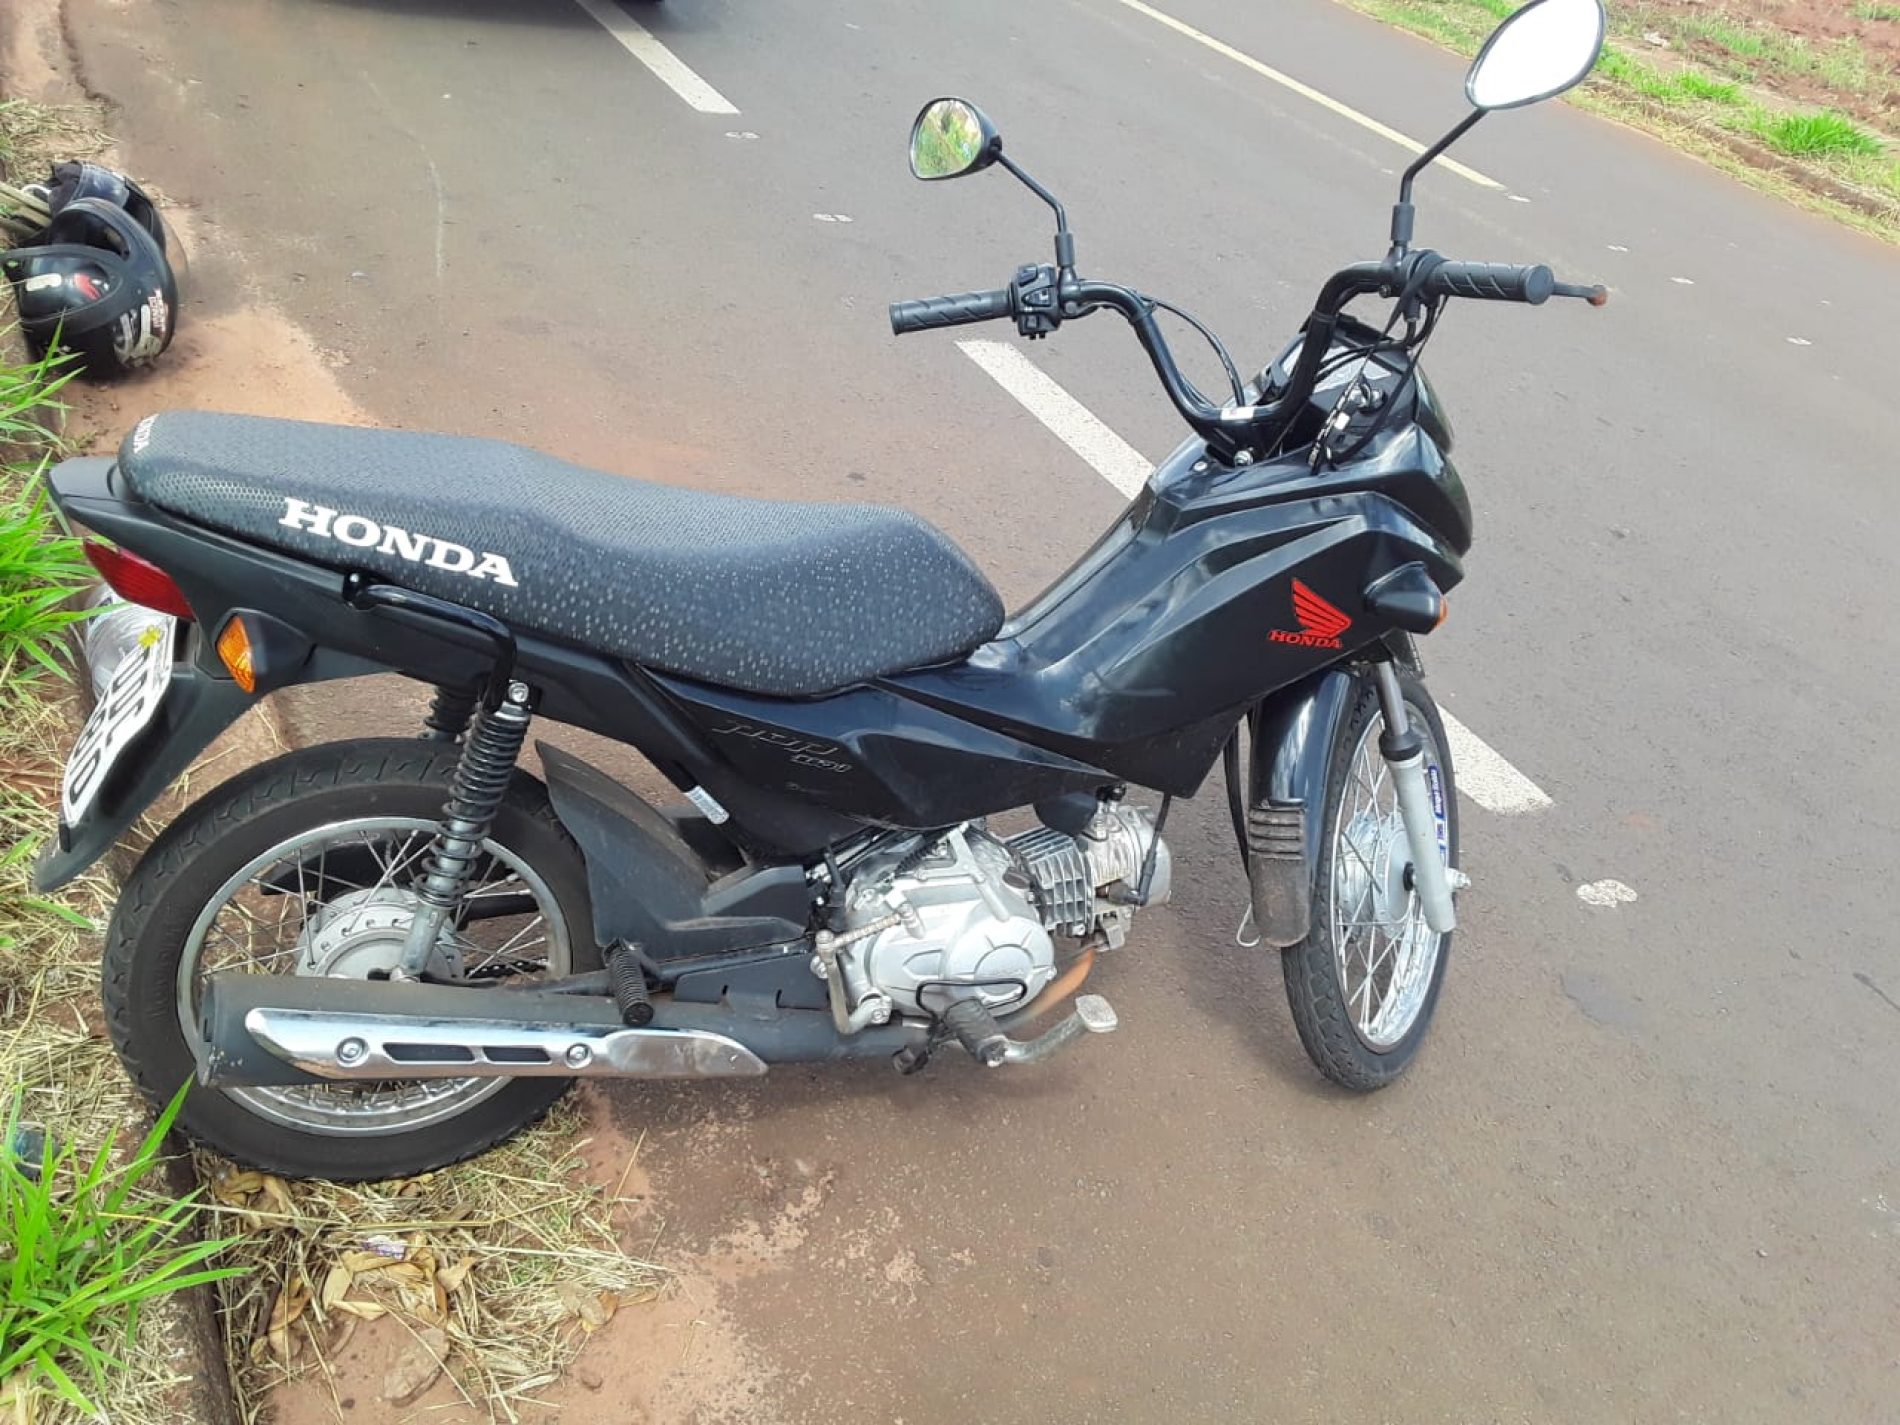 BARRETOS: Polícia recupera moto que havia sido furtada na cidade de Araçatuba